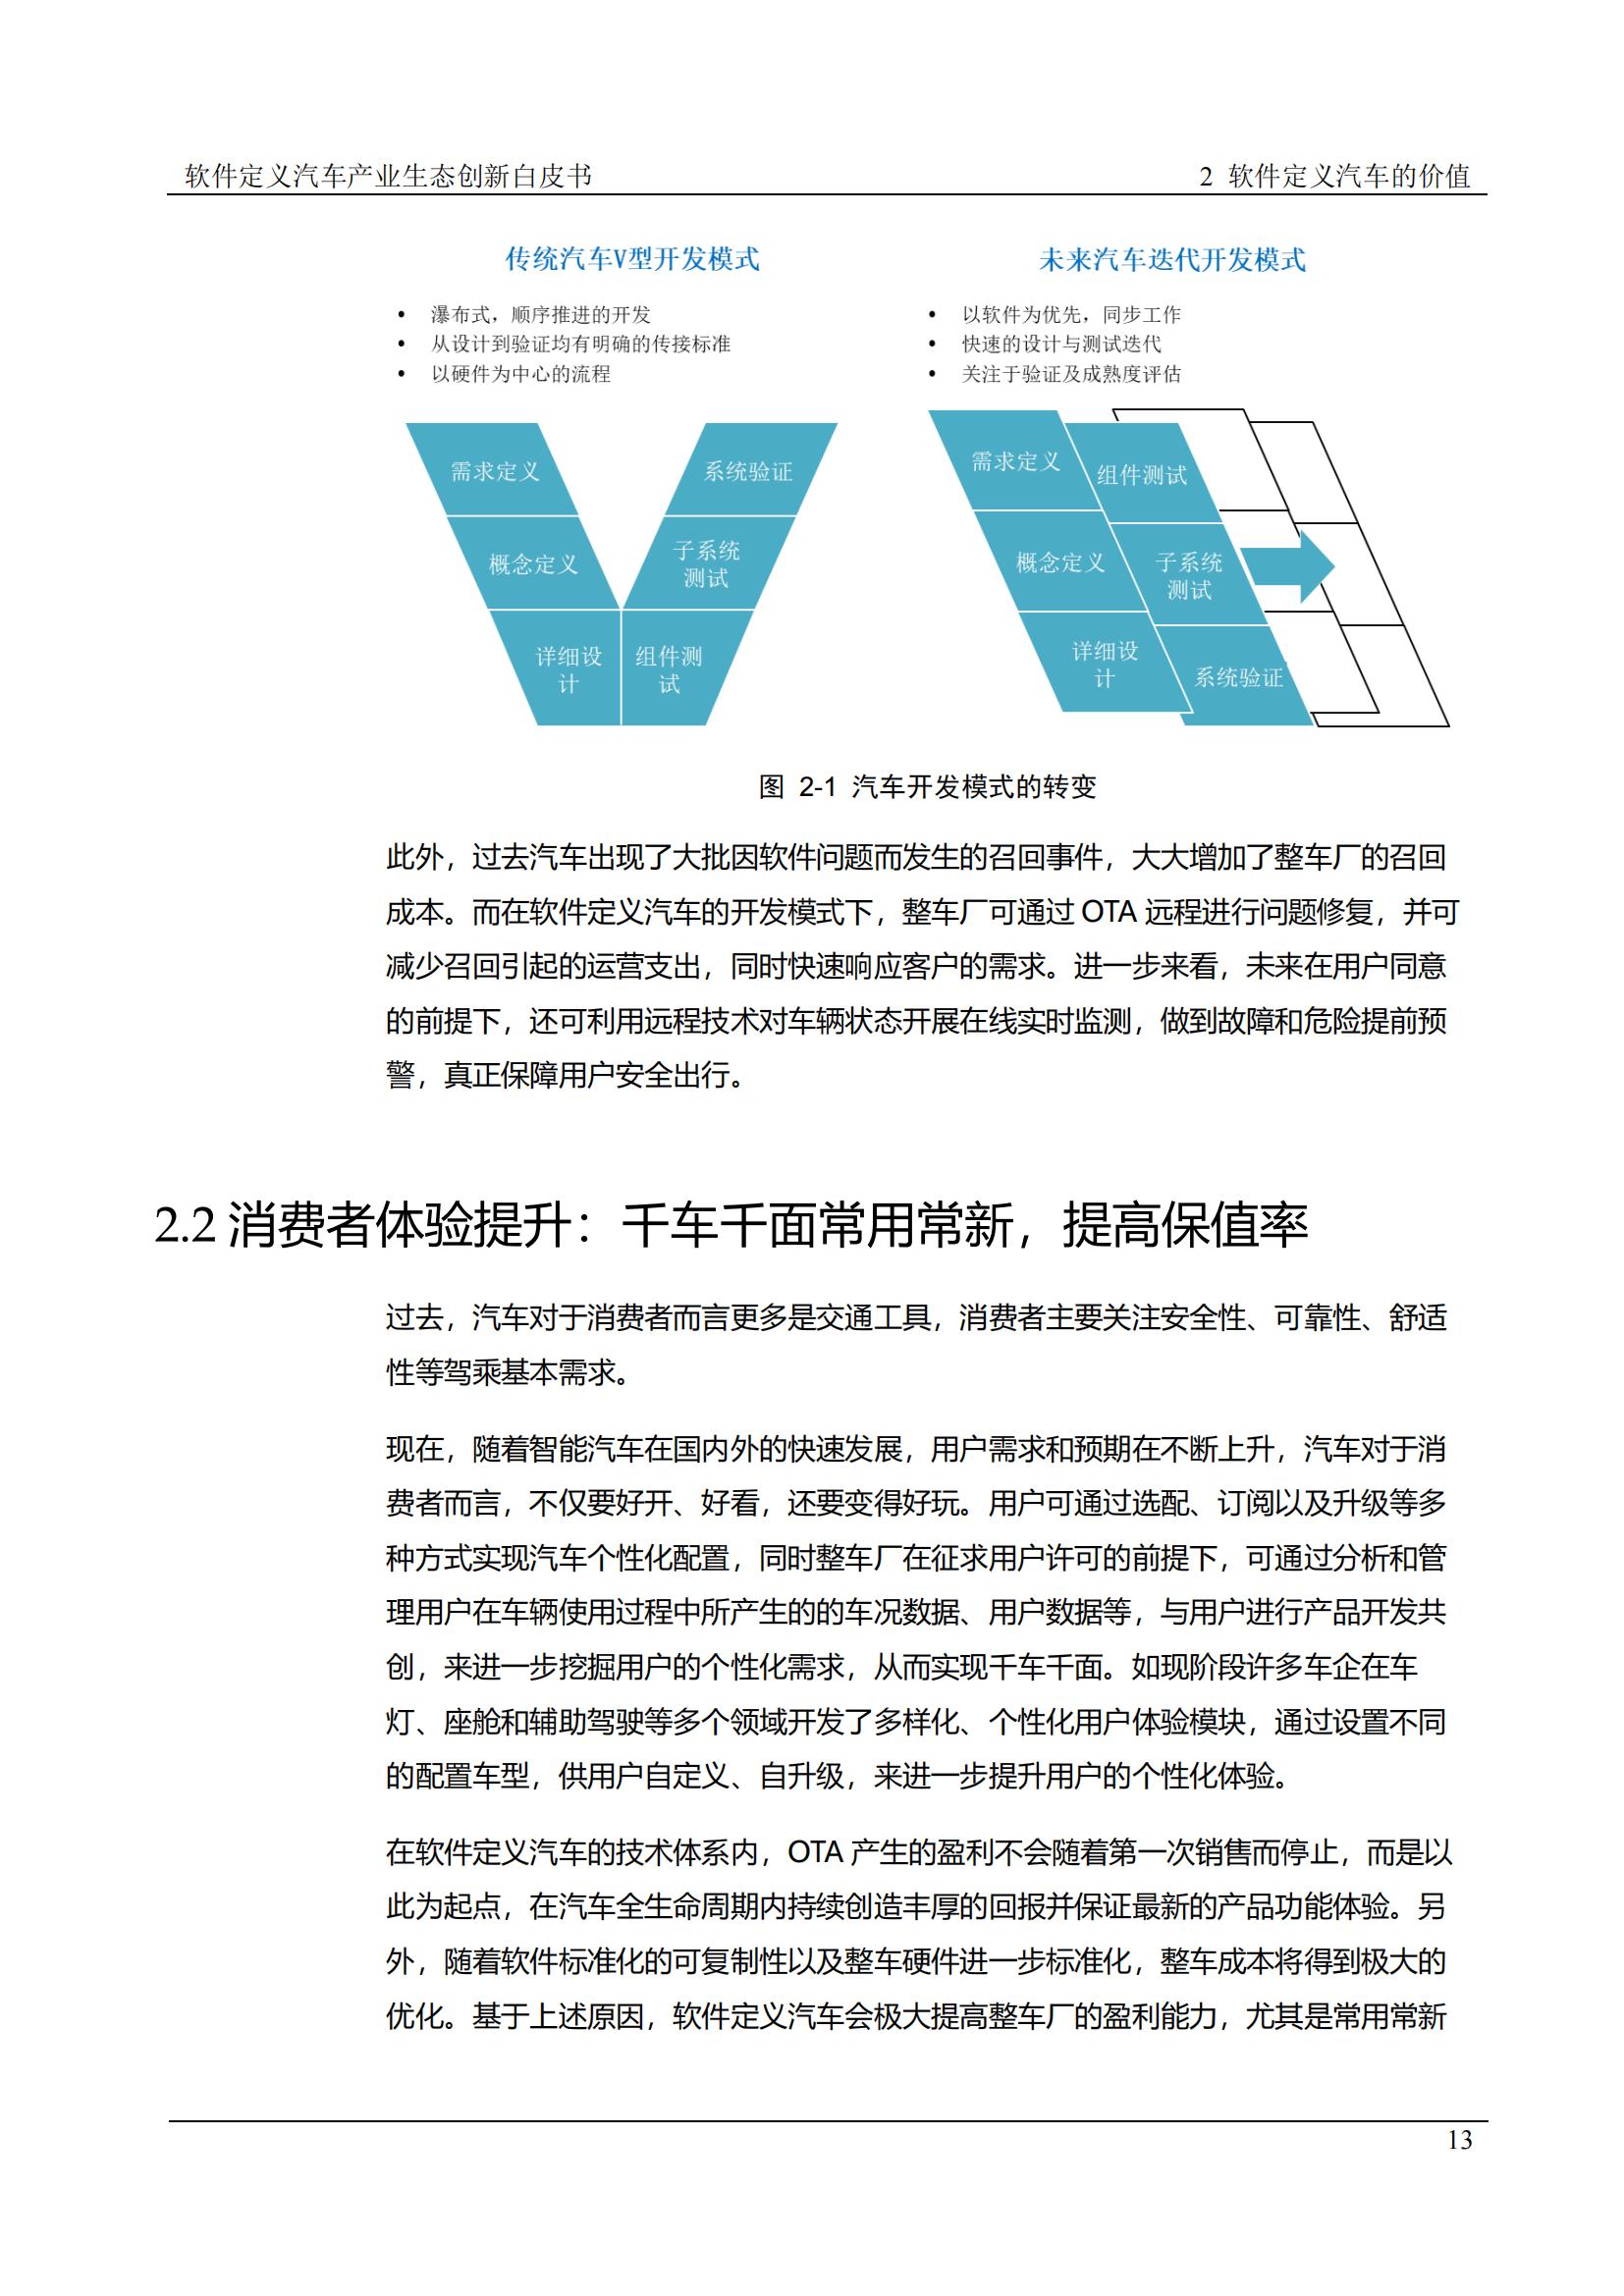 中国软件定义汽车SDV白皮书  20221110_12.jpg